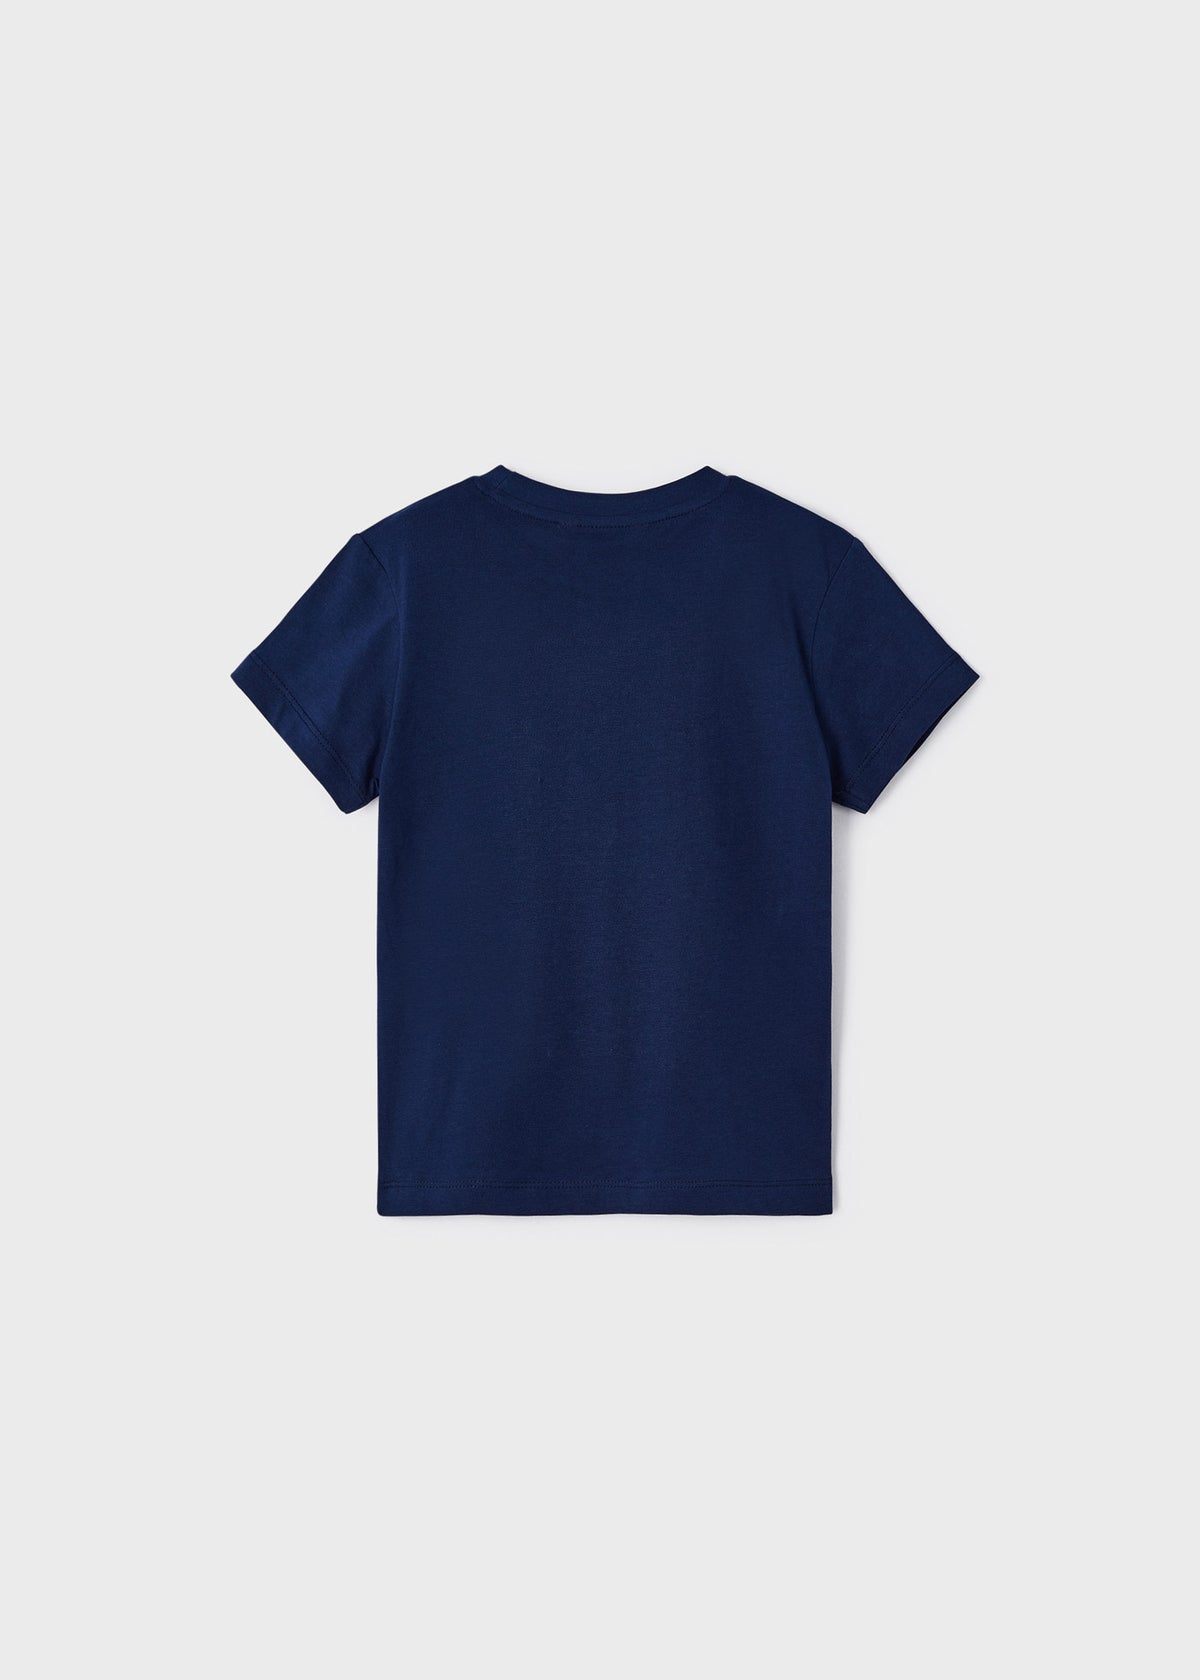 Jungen T-Shirt 2er Set 3022 Blanco Navy